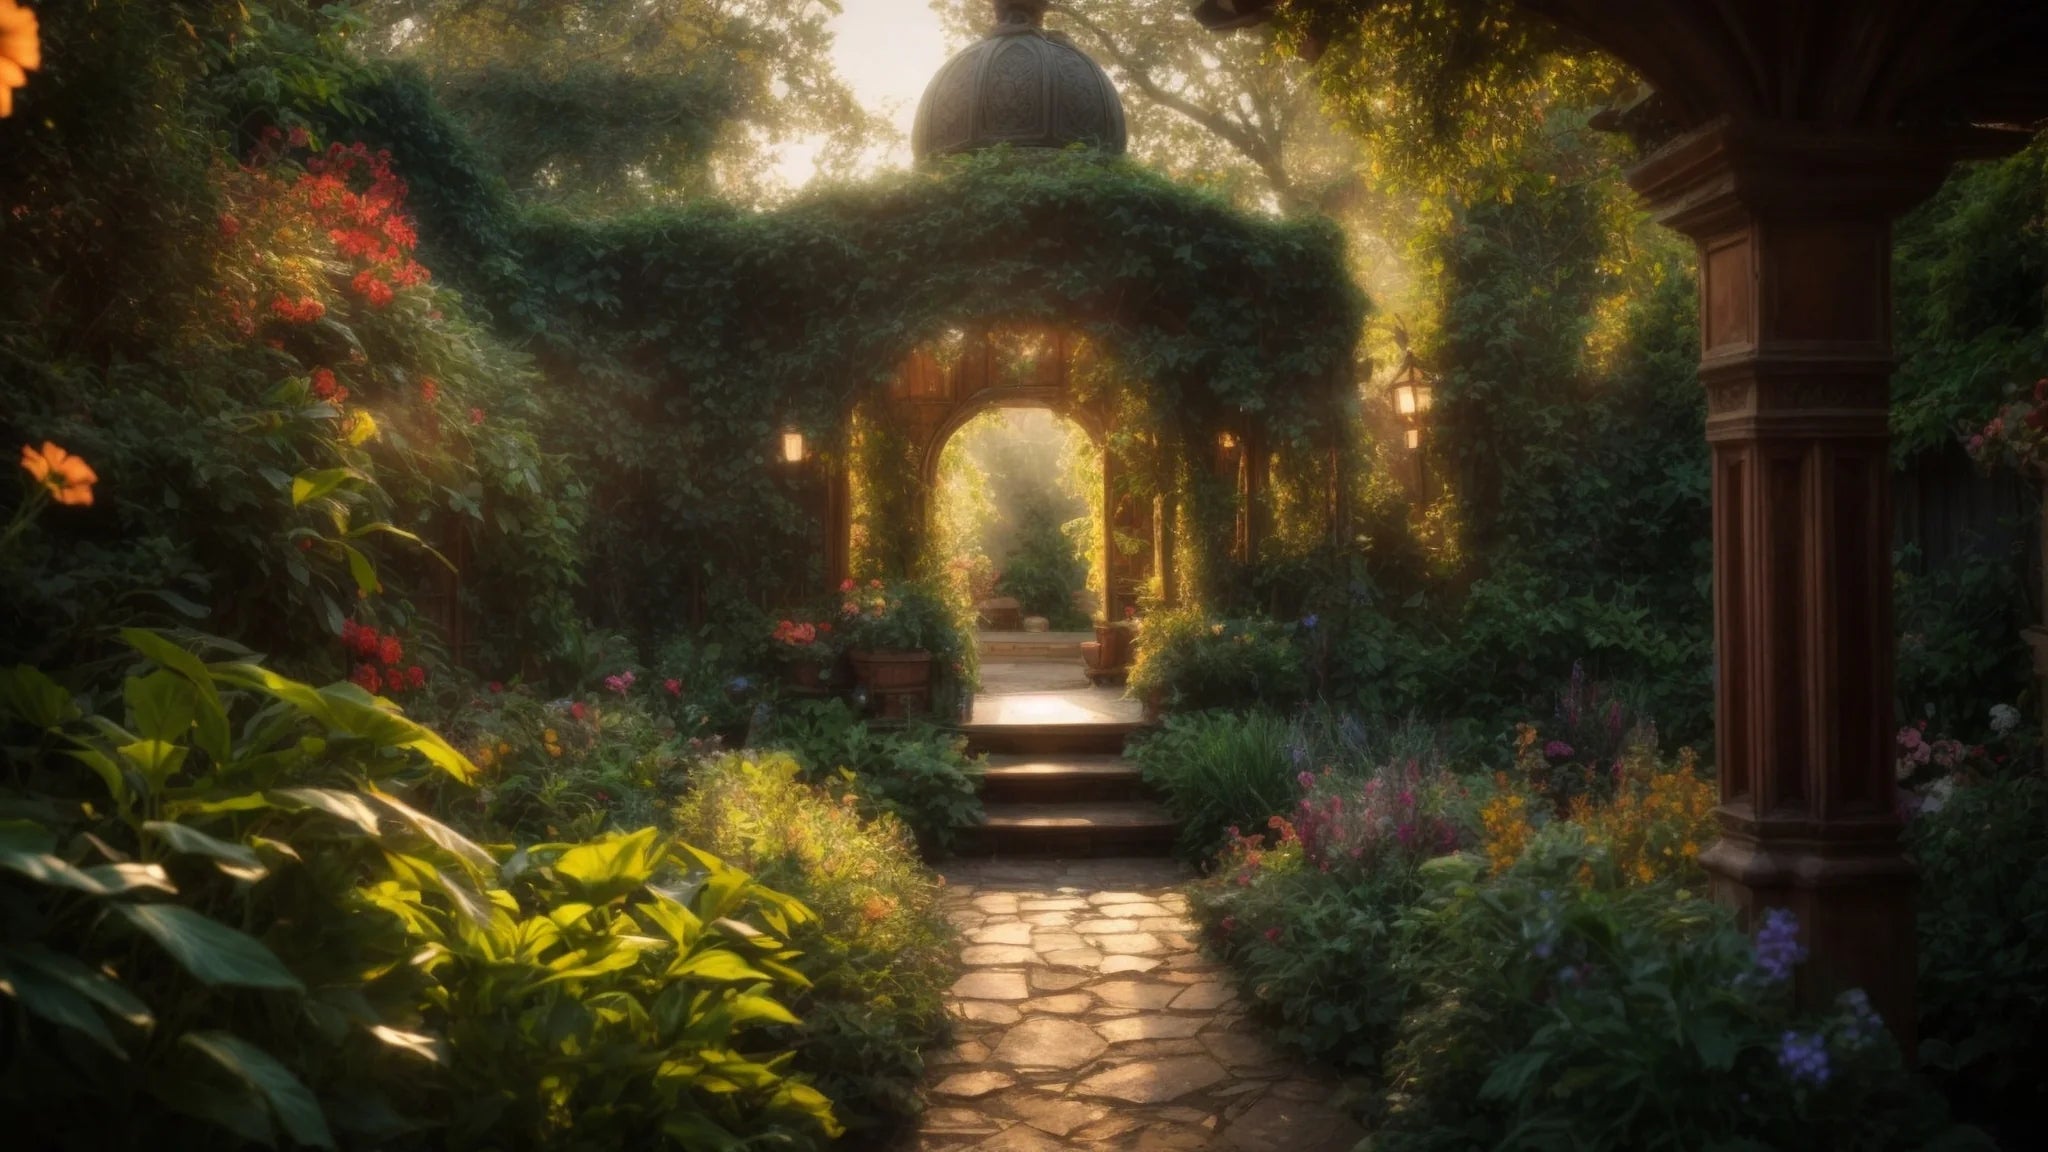 Enchanted in the Garden - Spiral Circle